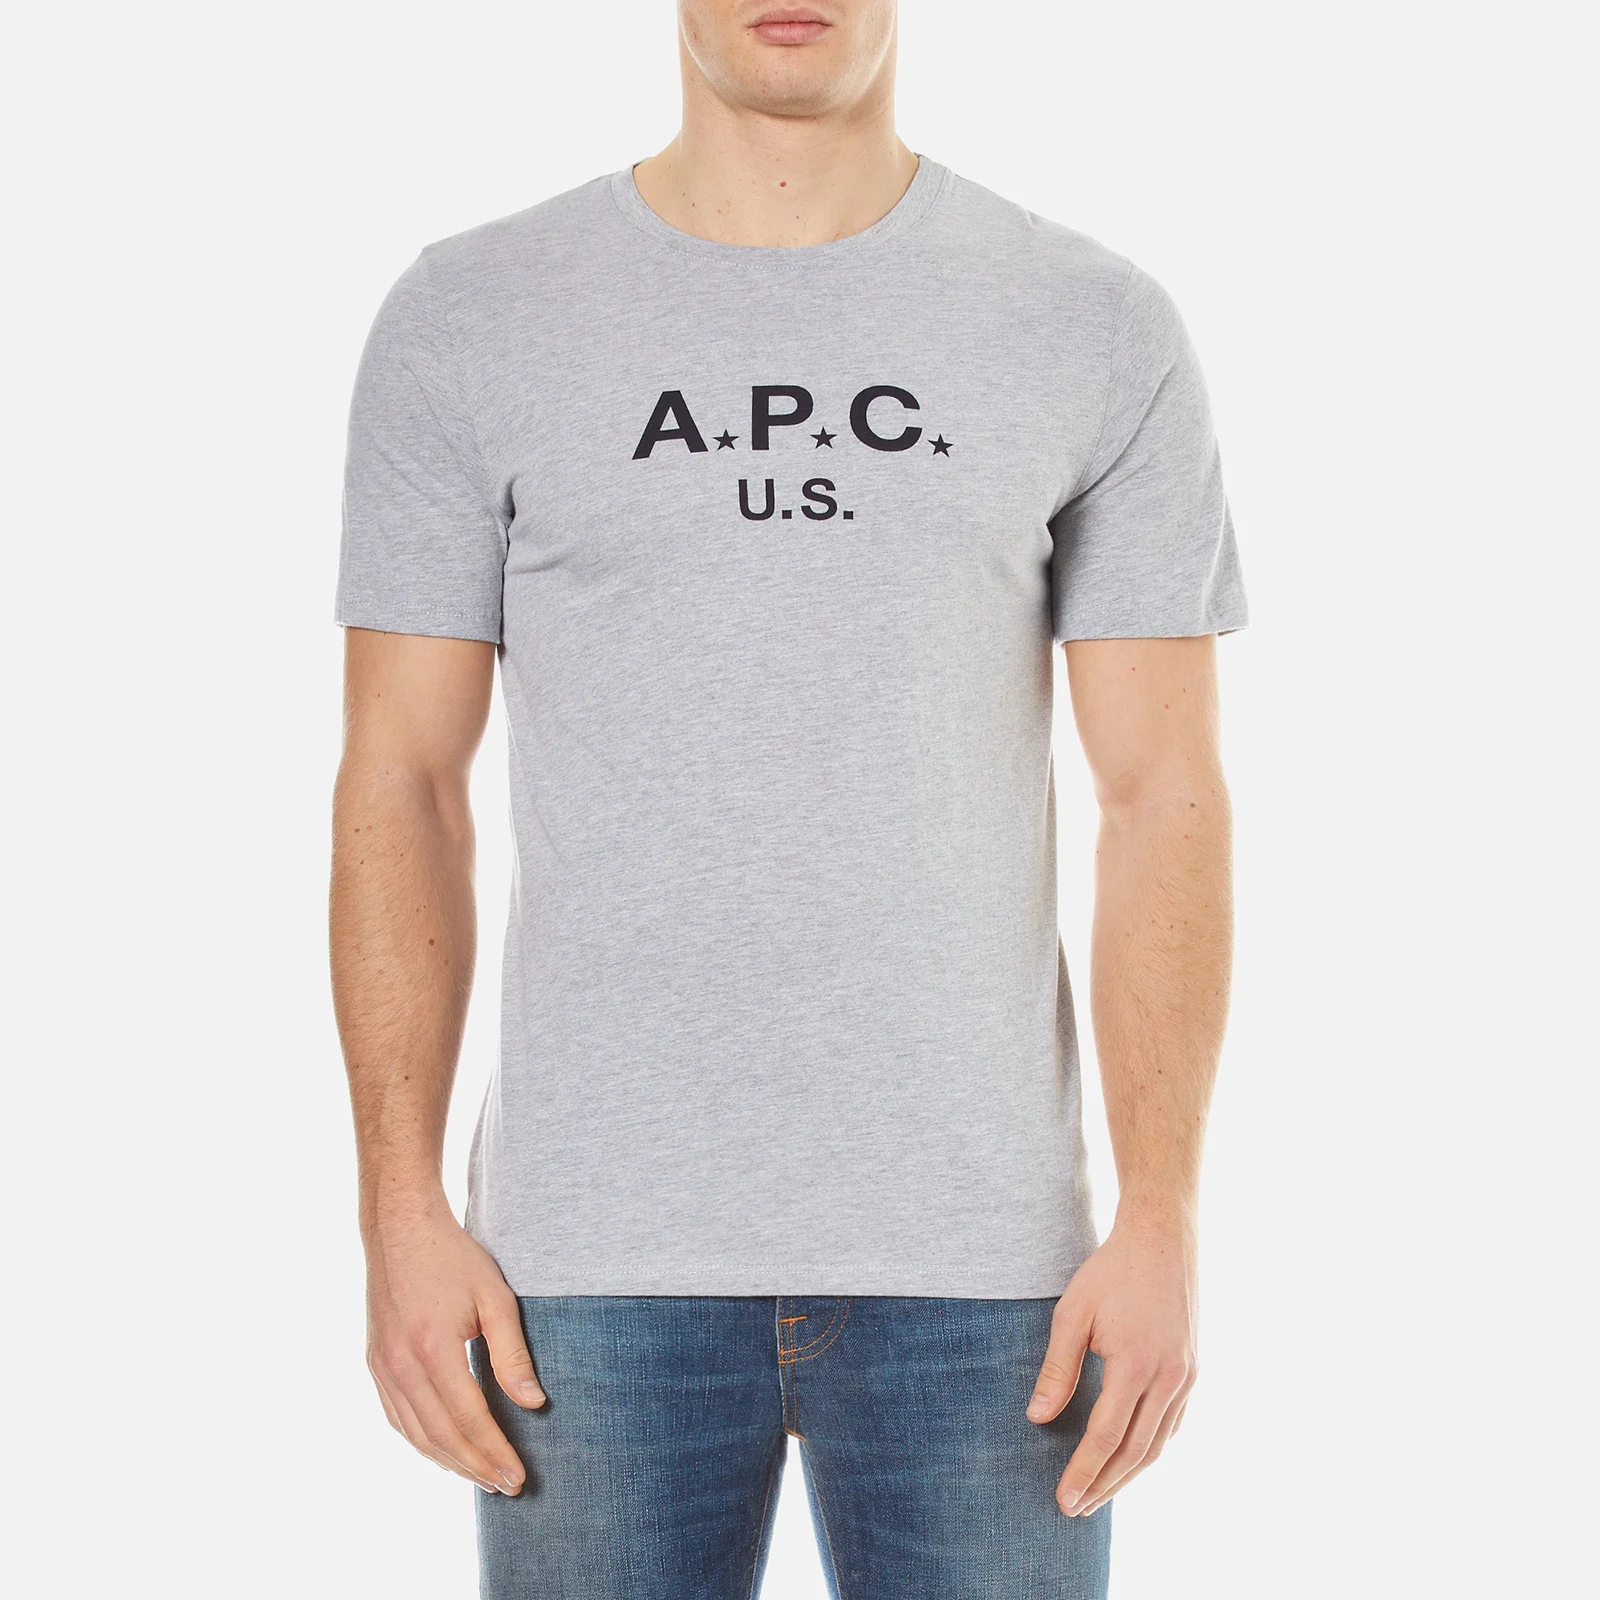 A.P.C. Men's A.P.C US Crew Neck T-Shirt - Gris Clair Chine Image 1